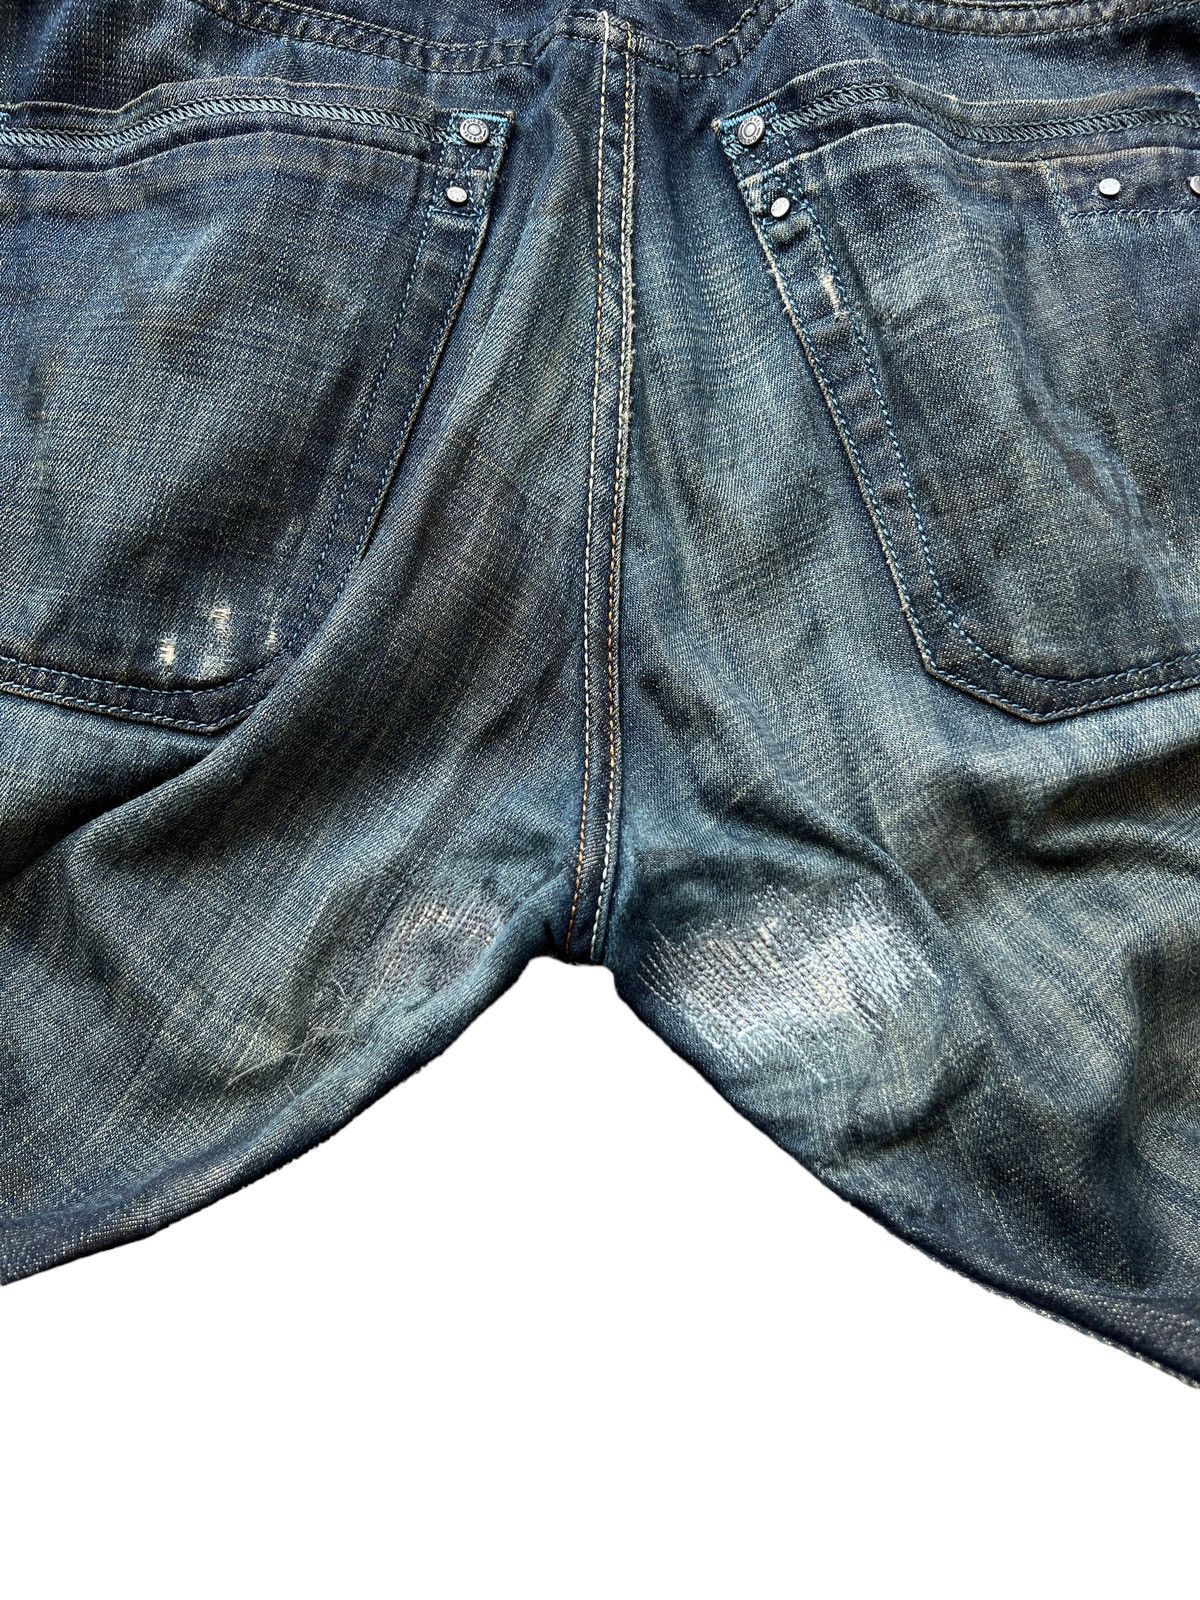 Vintage Diesel Industry Distressed Denim Jeans 34x30 - 8